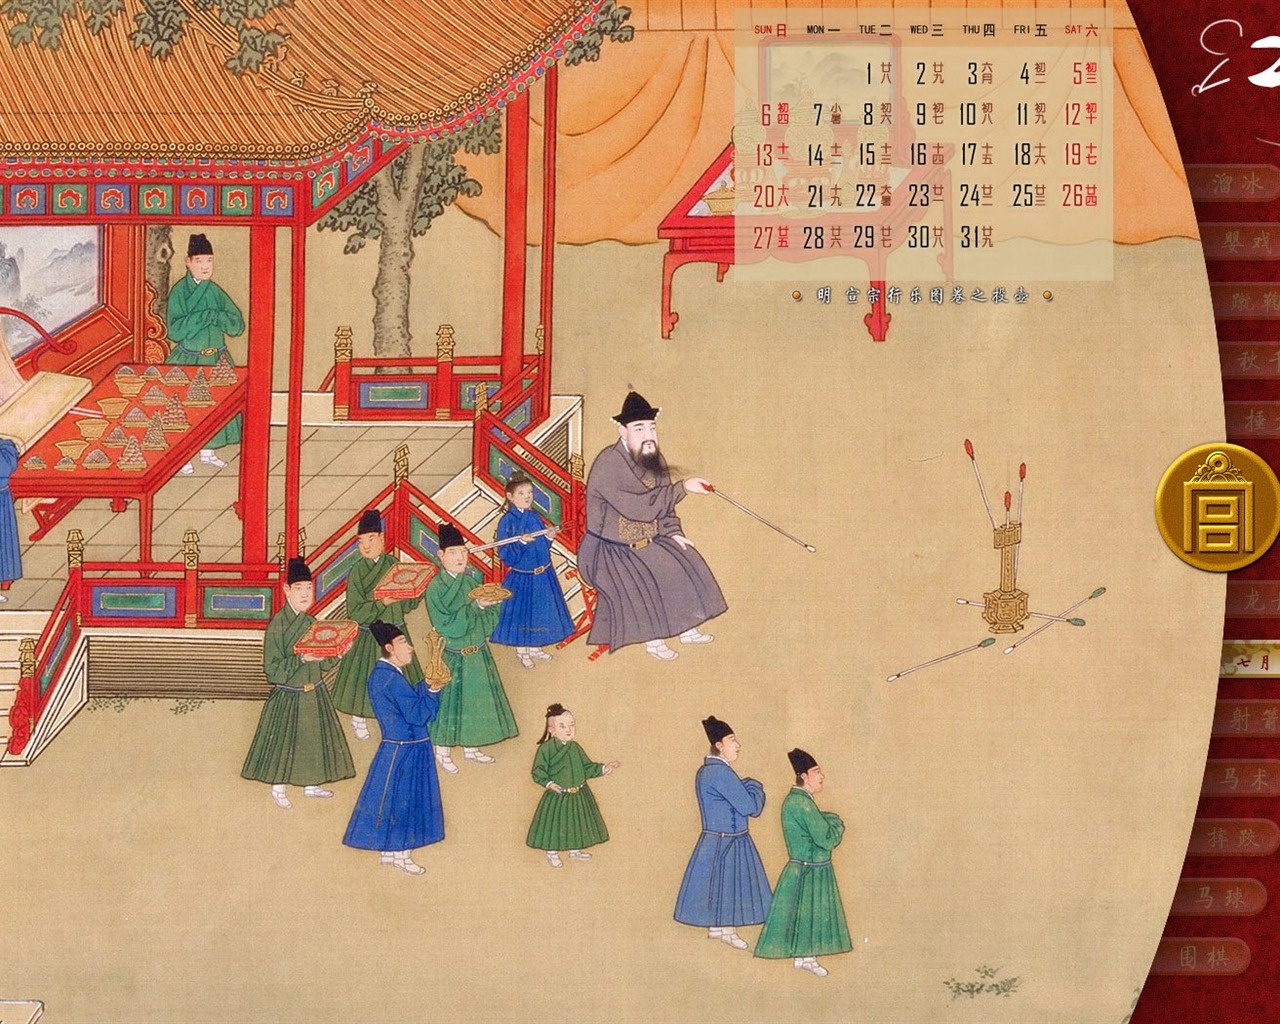 北京故宫博物院 文物展壁纸(二)4 - 1280x1024